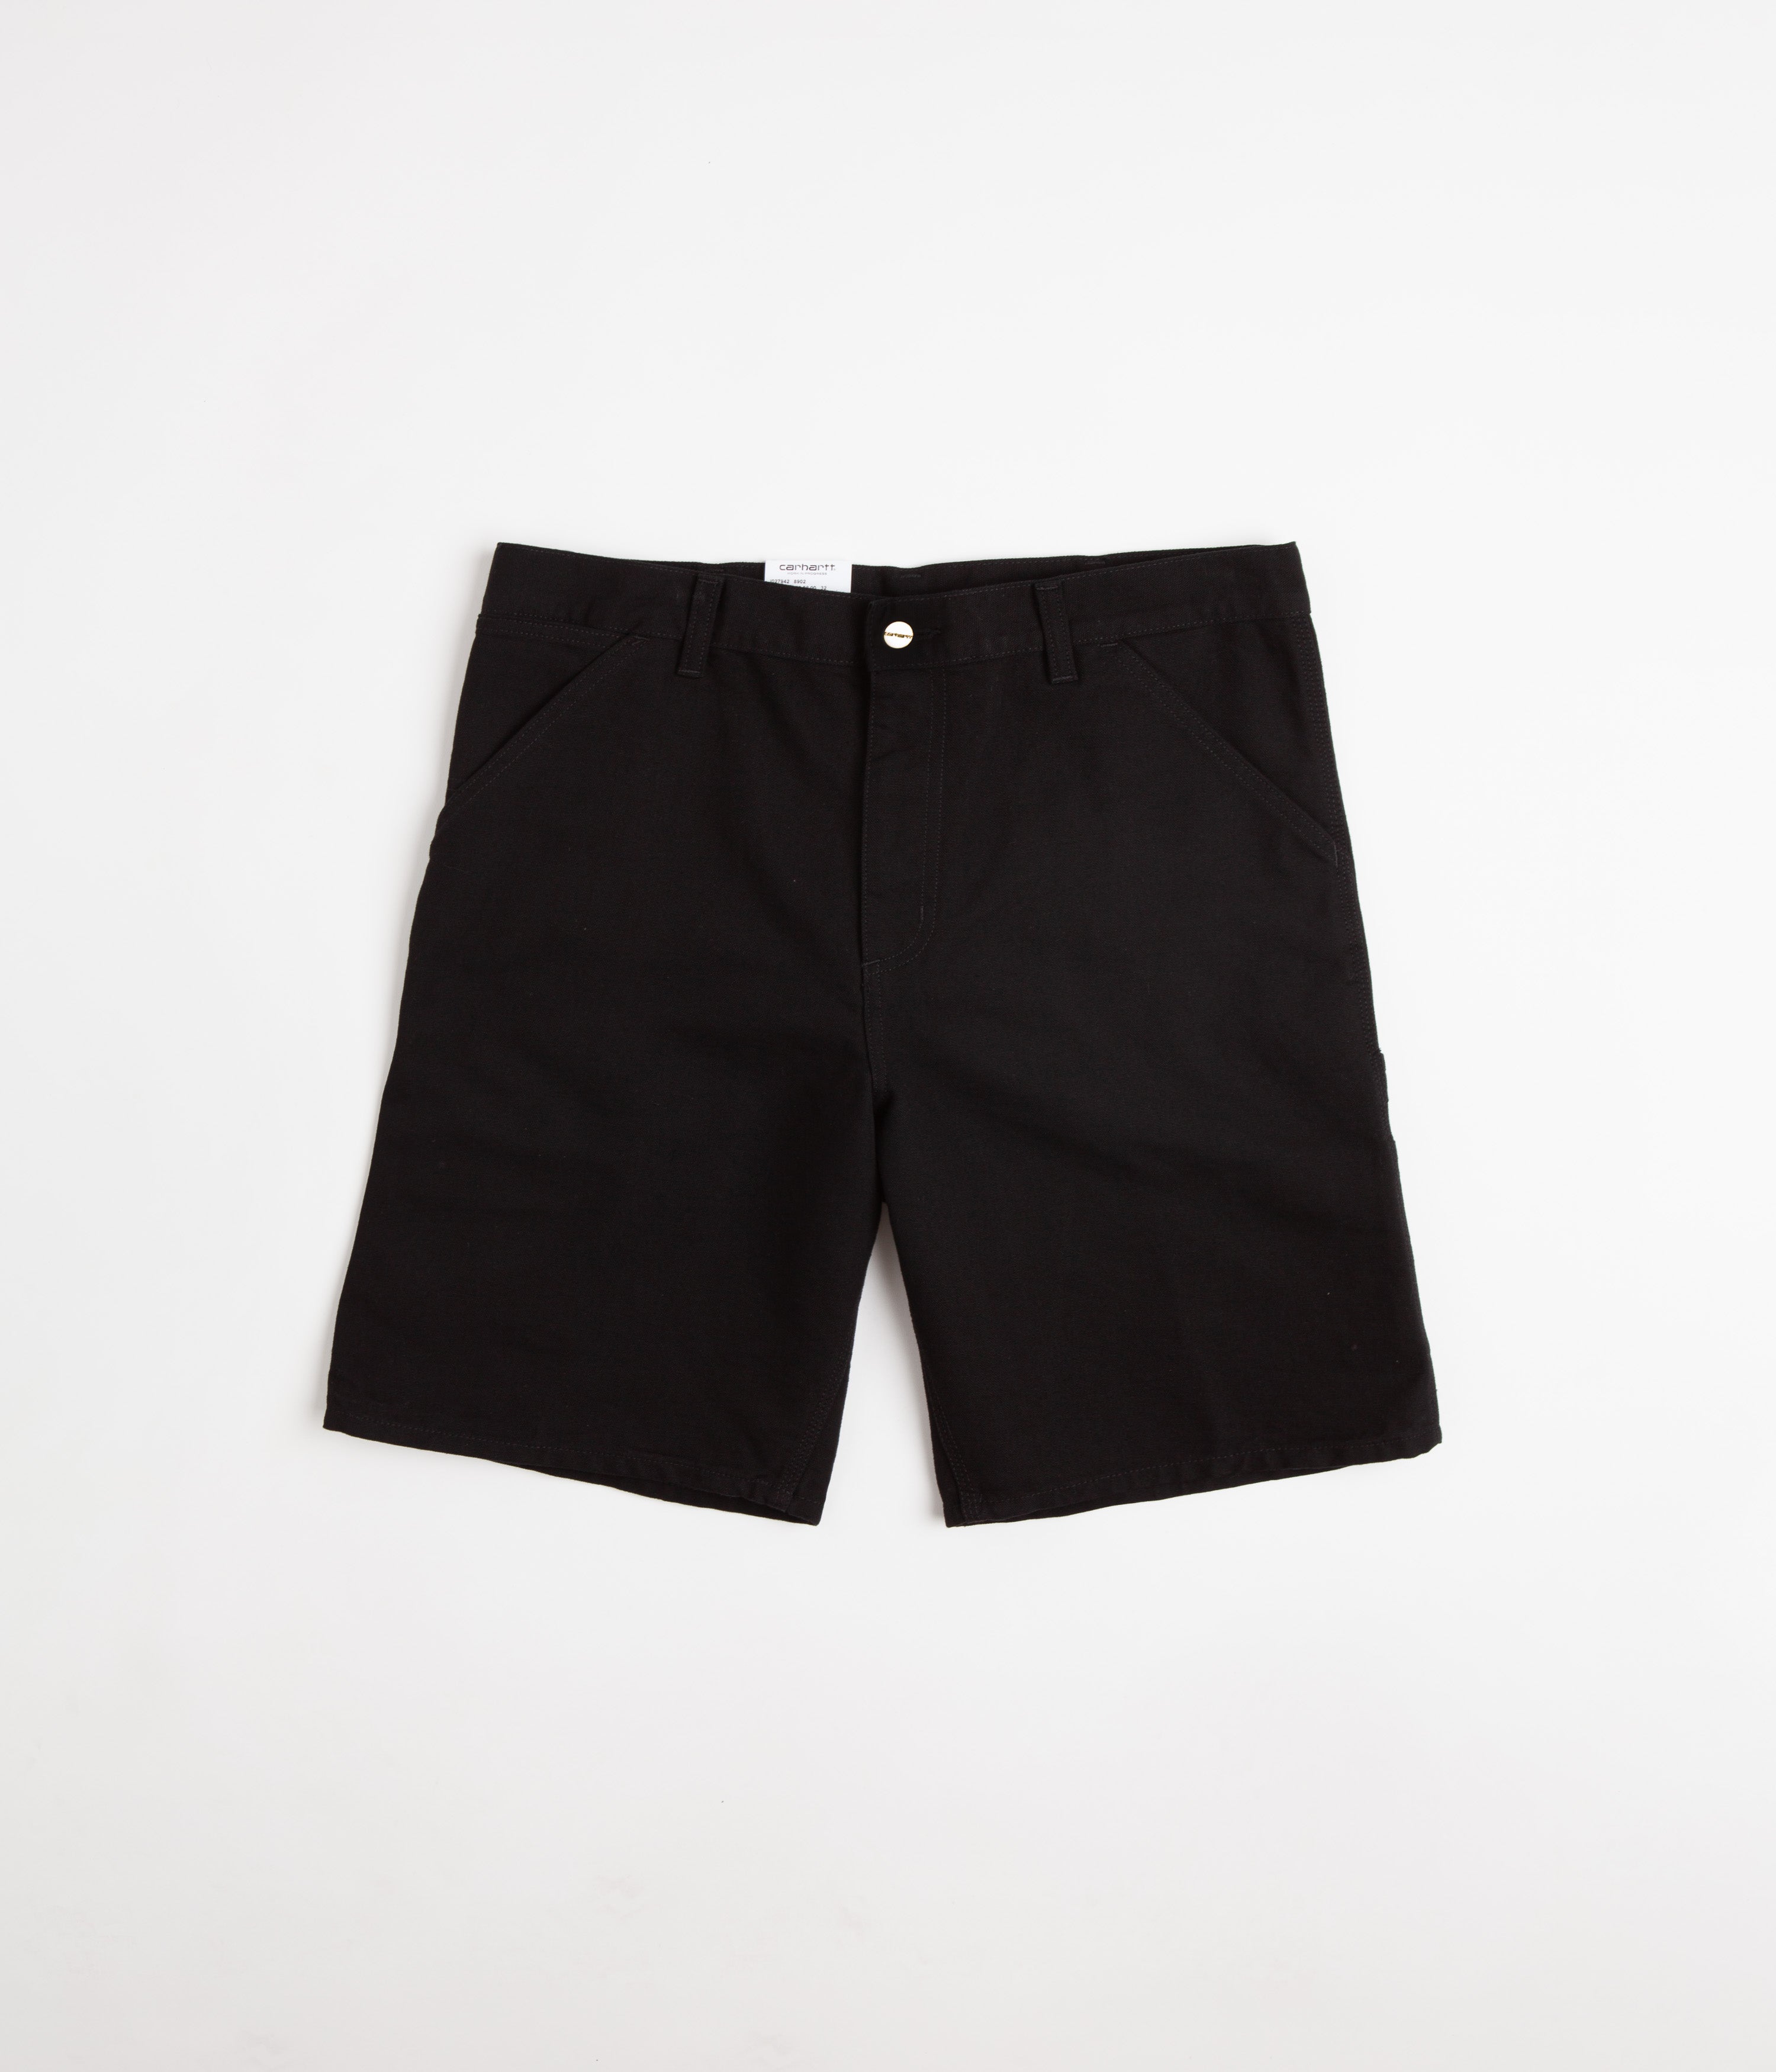 Carhartt Single Knee Shorts - Black Rinsed | Flatspot